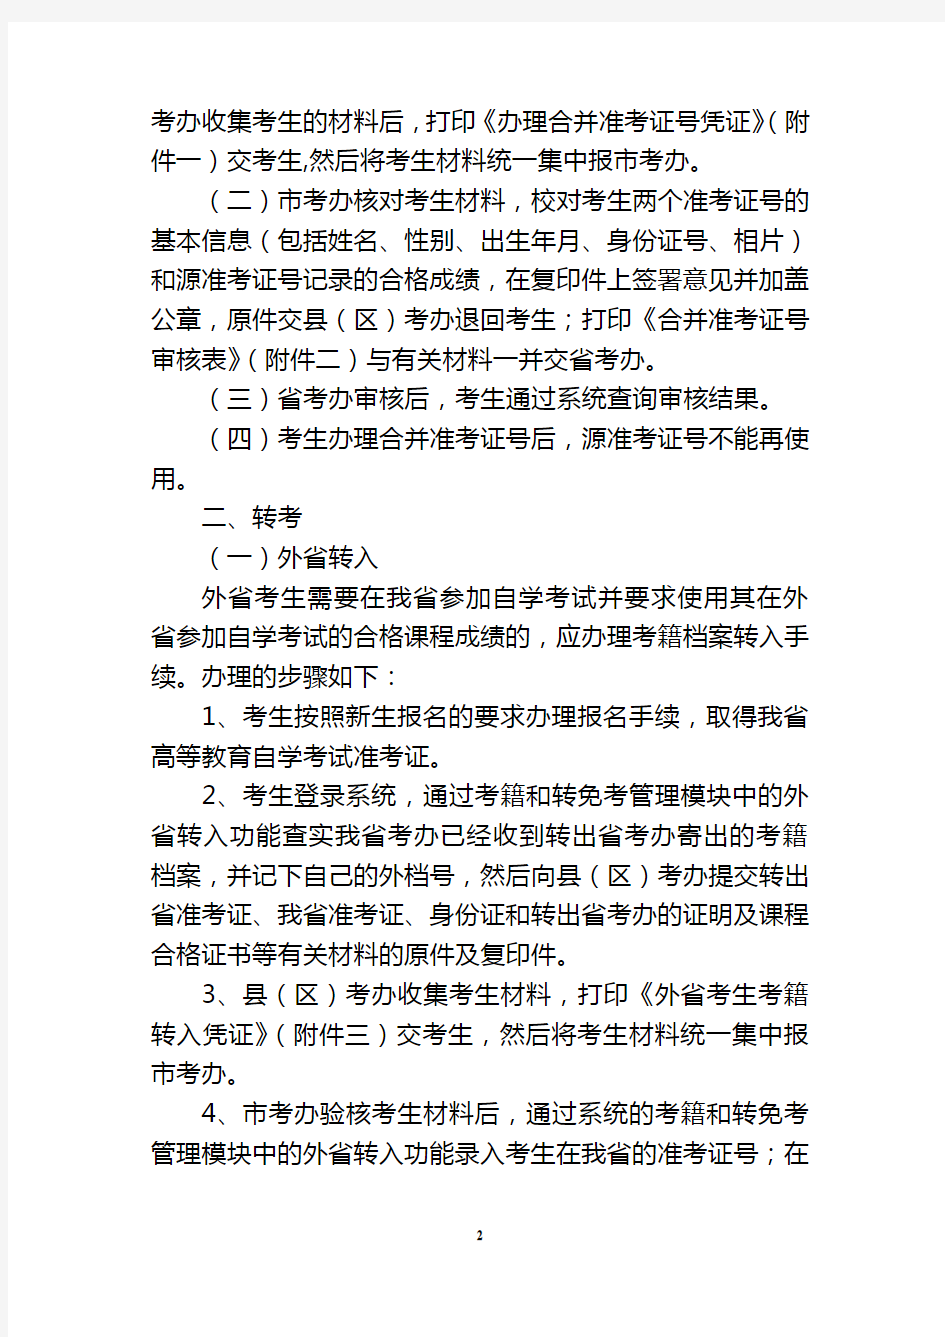 广东省自学考试管理系统办理高等教育自学考试考籍管理业务有关问题的通知